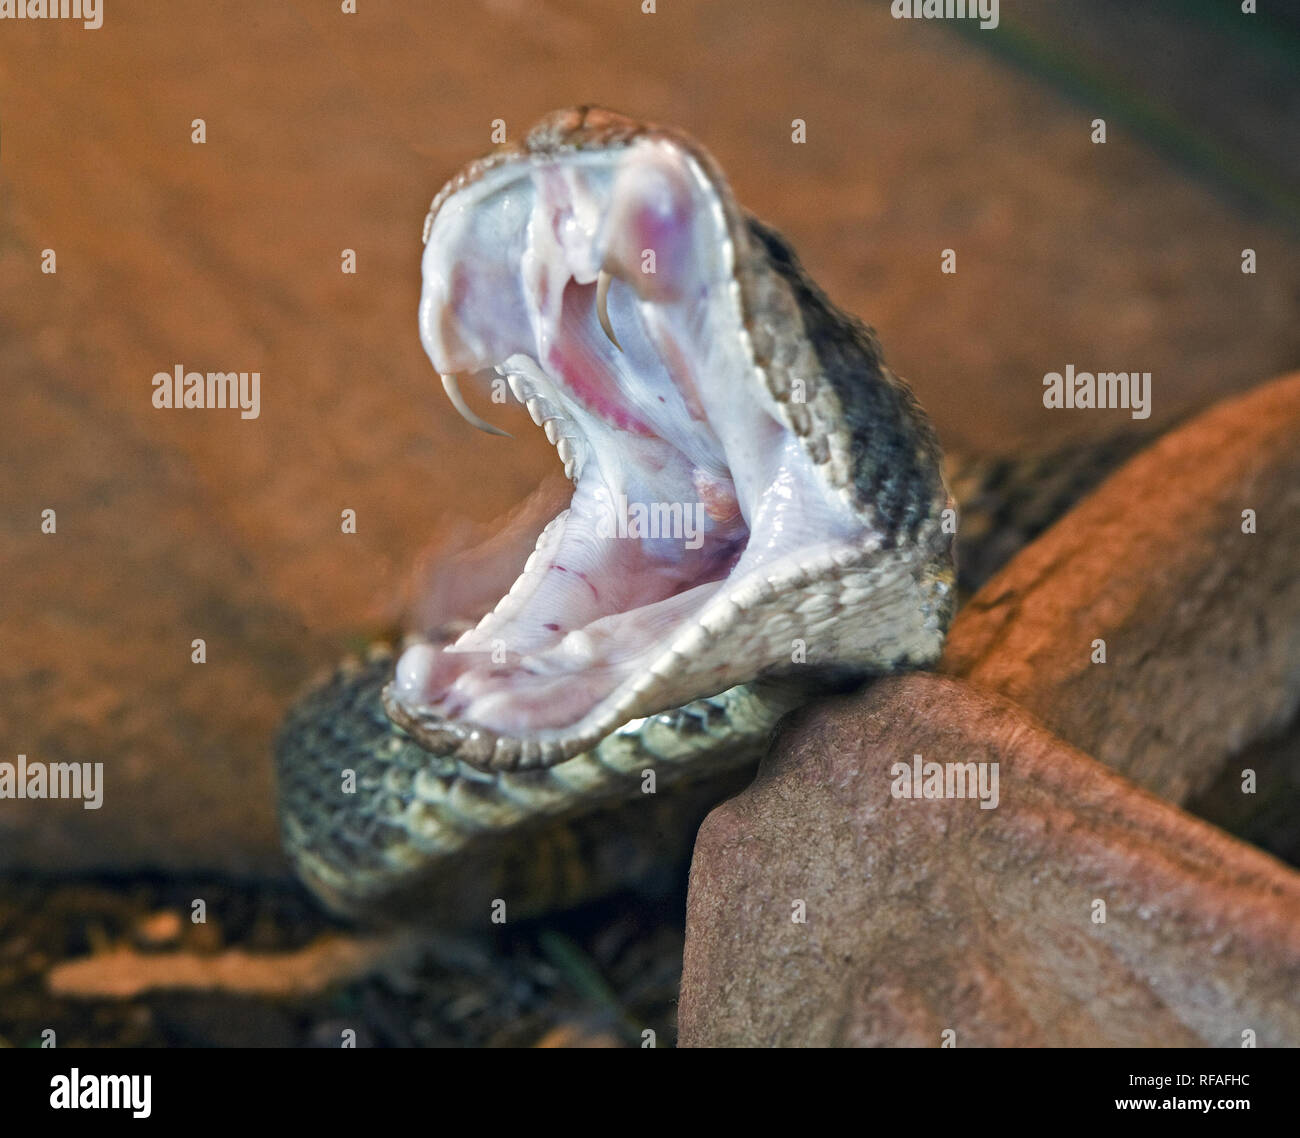 Reißzähne heraus, eine Westliche Klapperschlange, Crotalus viridis, macht ein Streik mit offenen Mund. Stockfoto